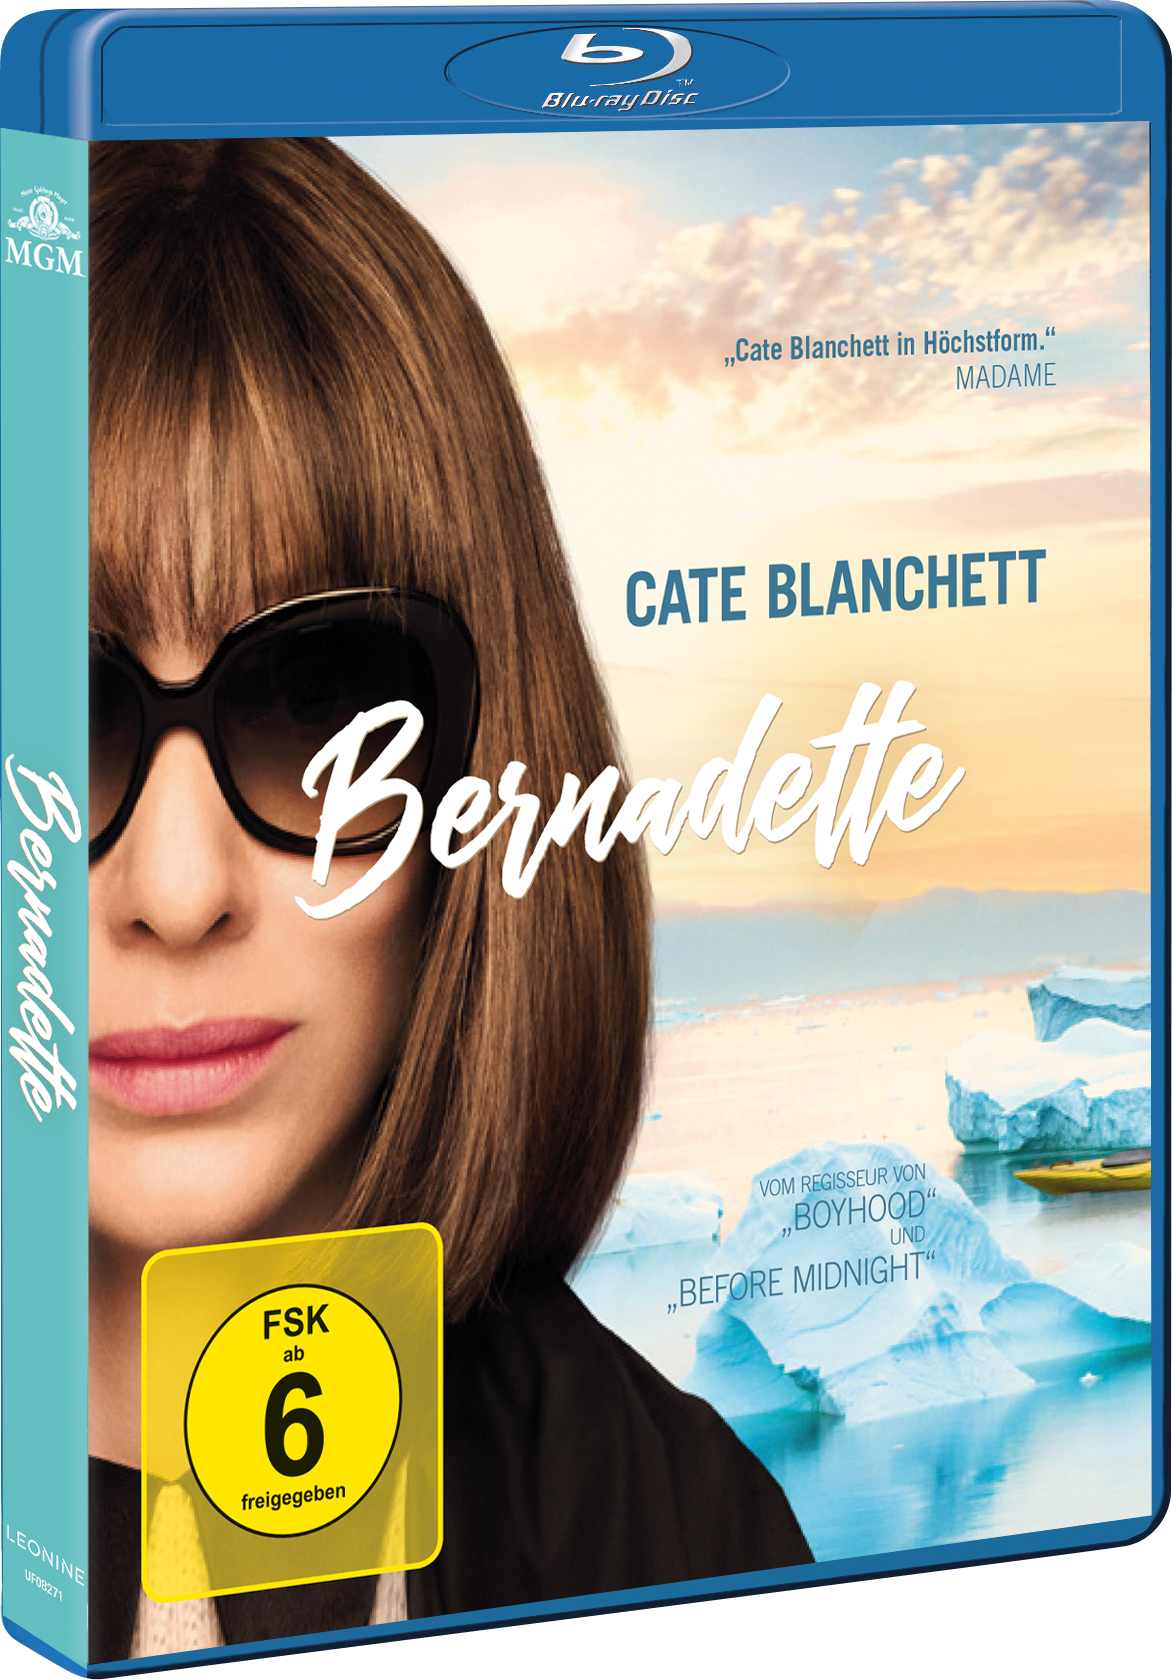 Bernadette Blu-ray